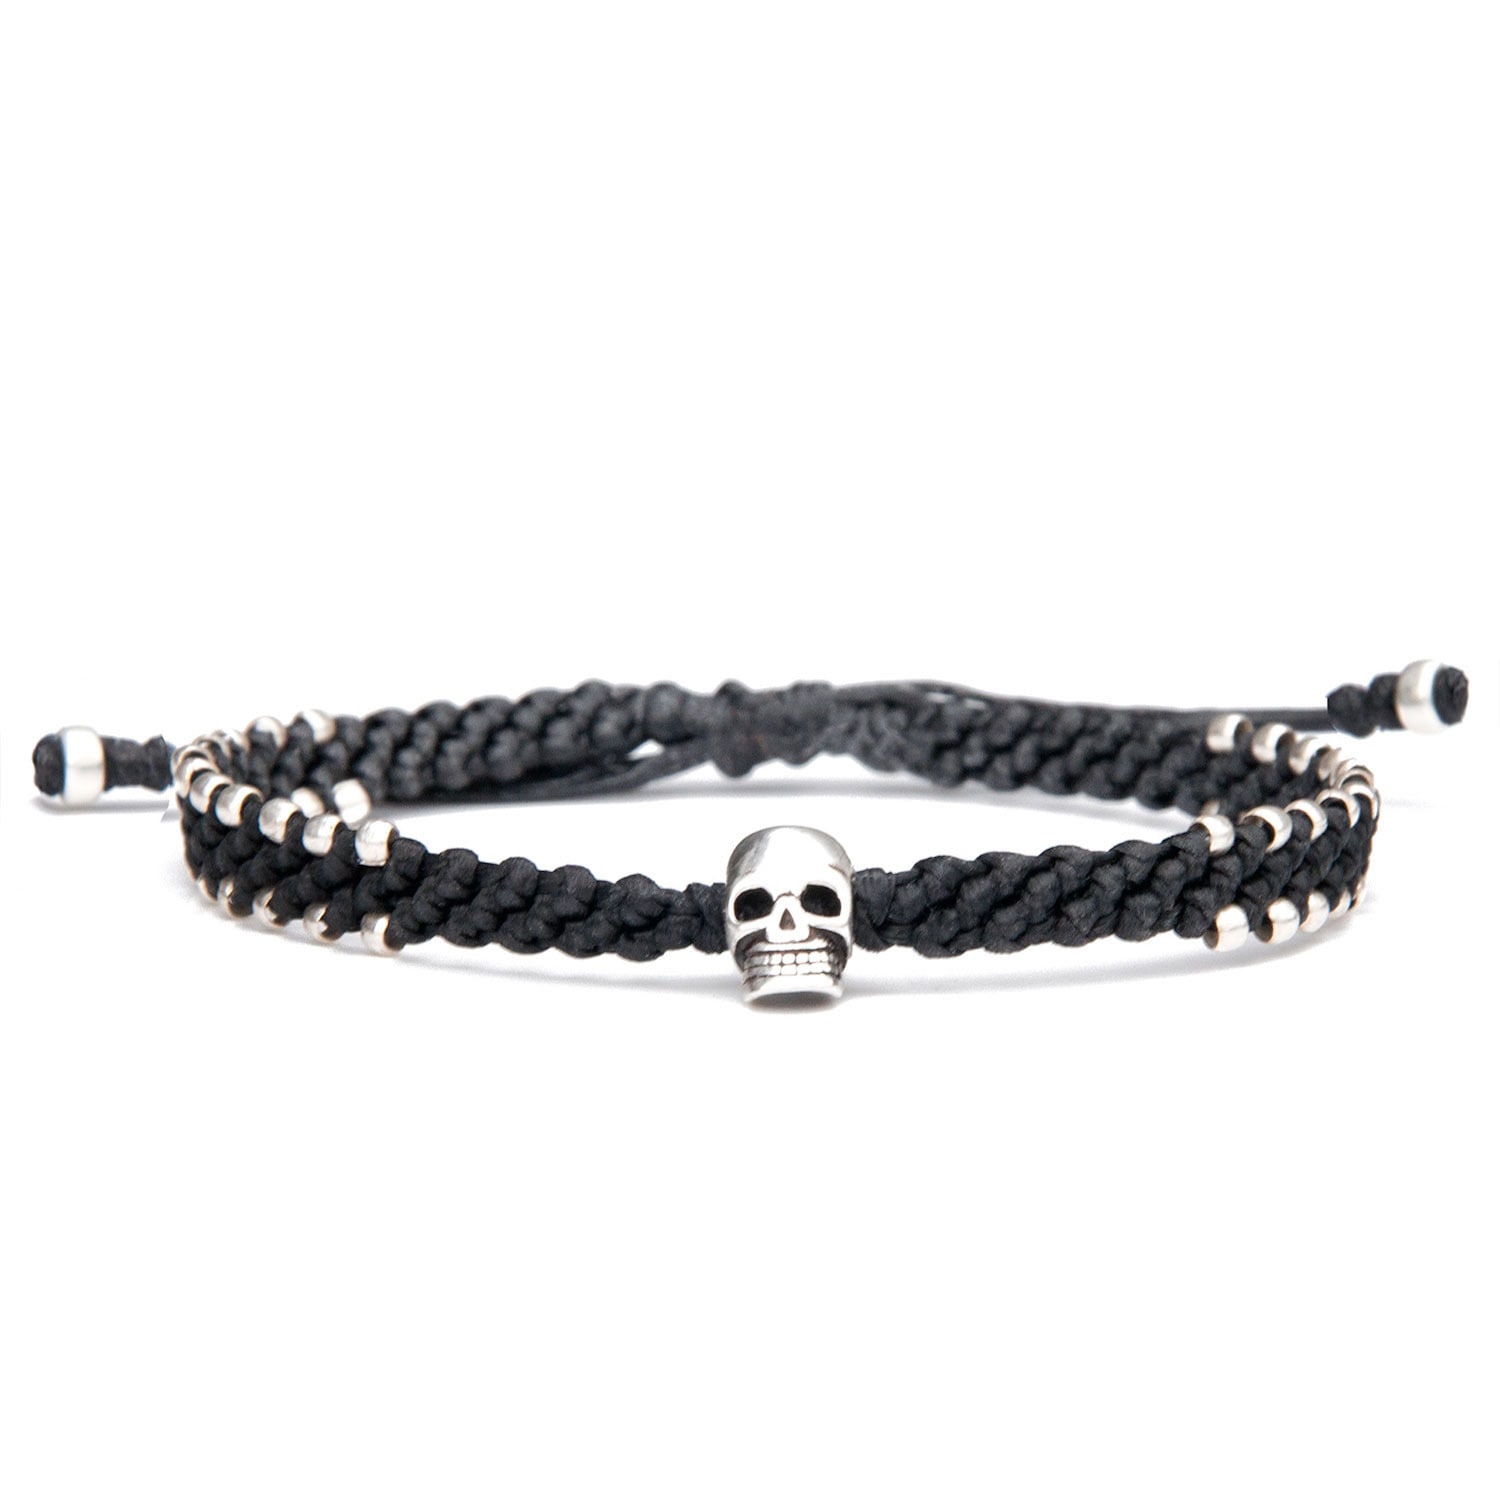 Black Skull Urban Vegan Bracelet For Men - Connection Harbour UK Bracelets